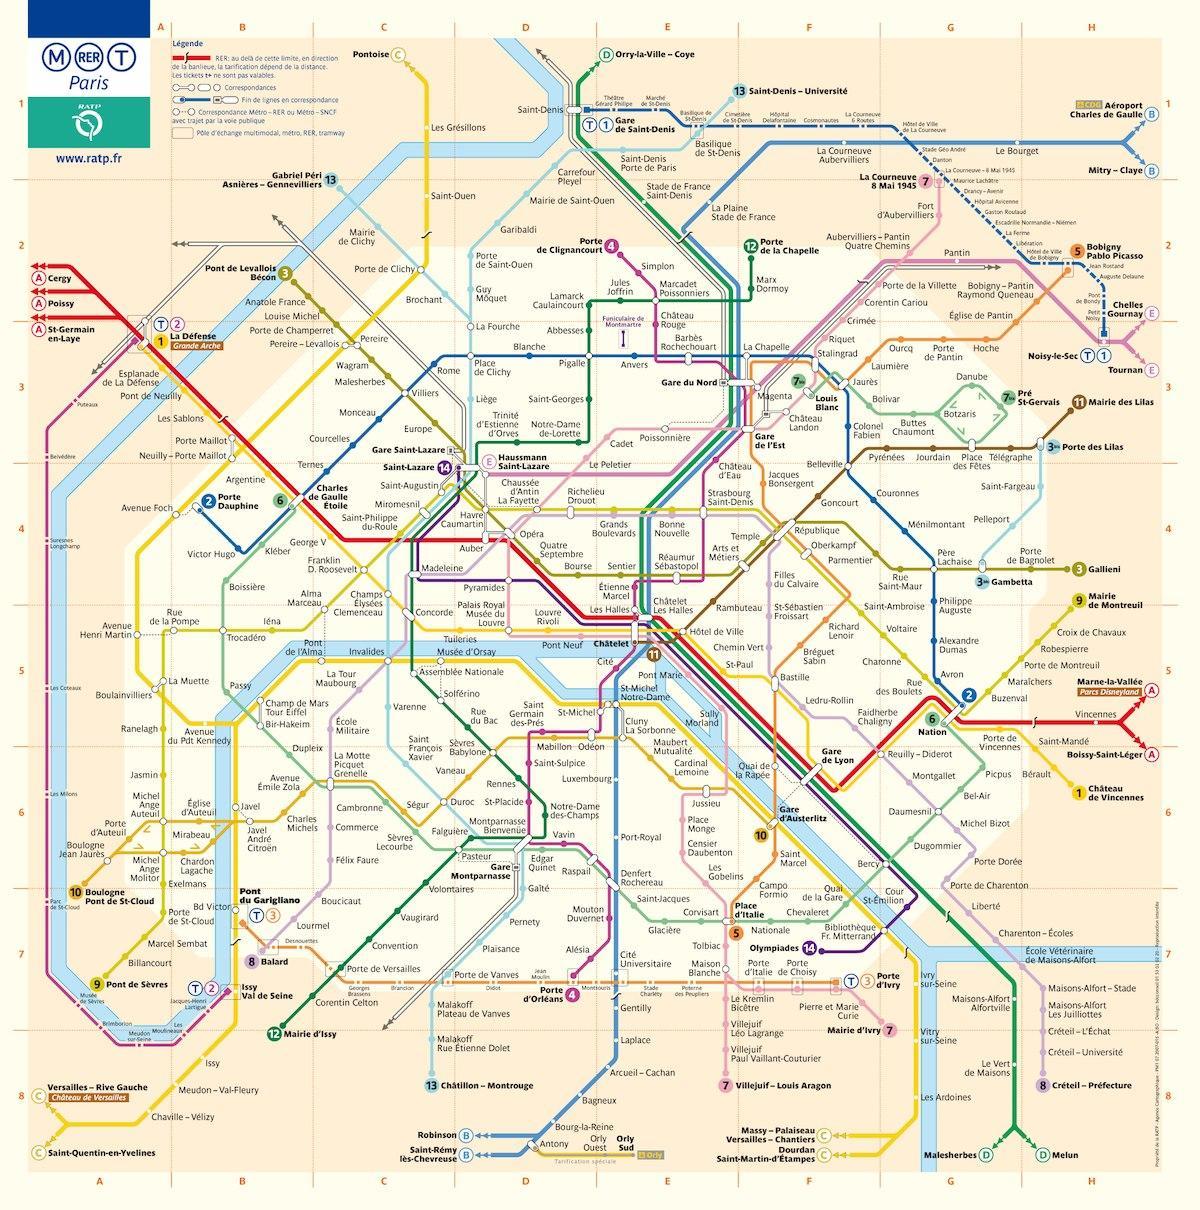 Вашингтон округ Колумбія карта метро з вулицями